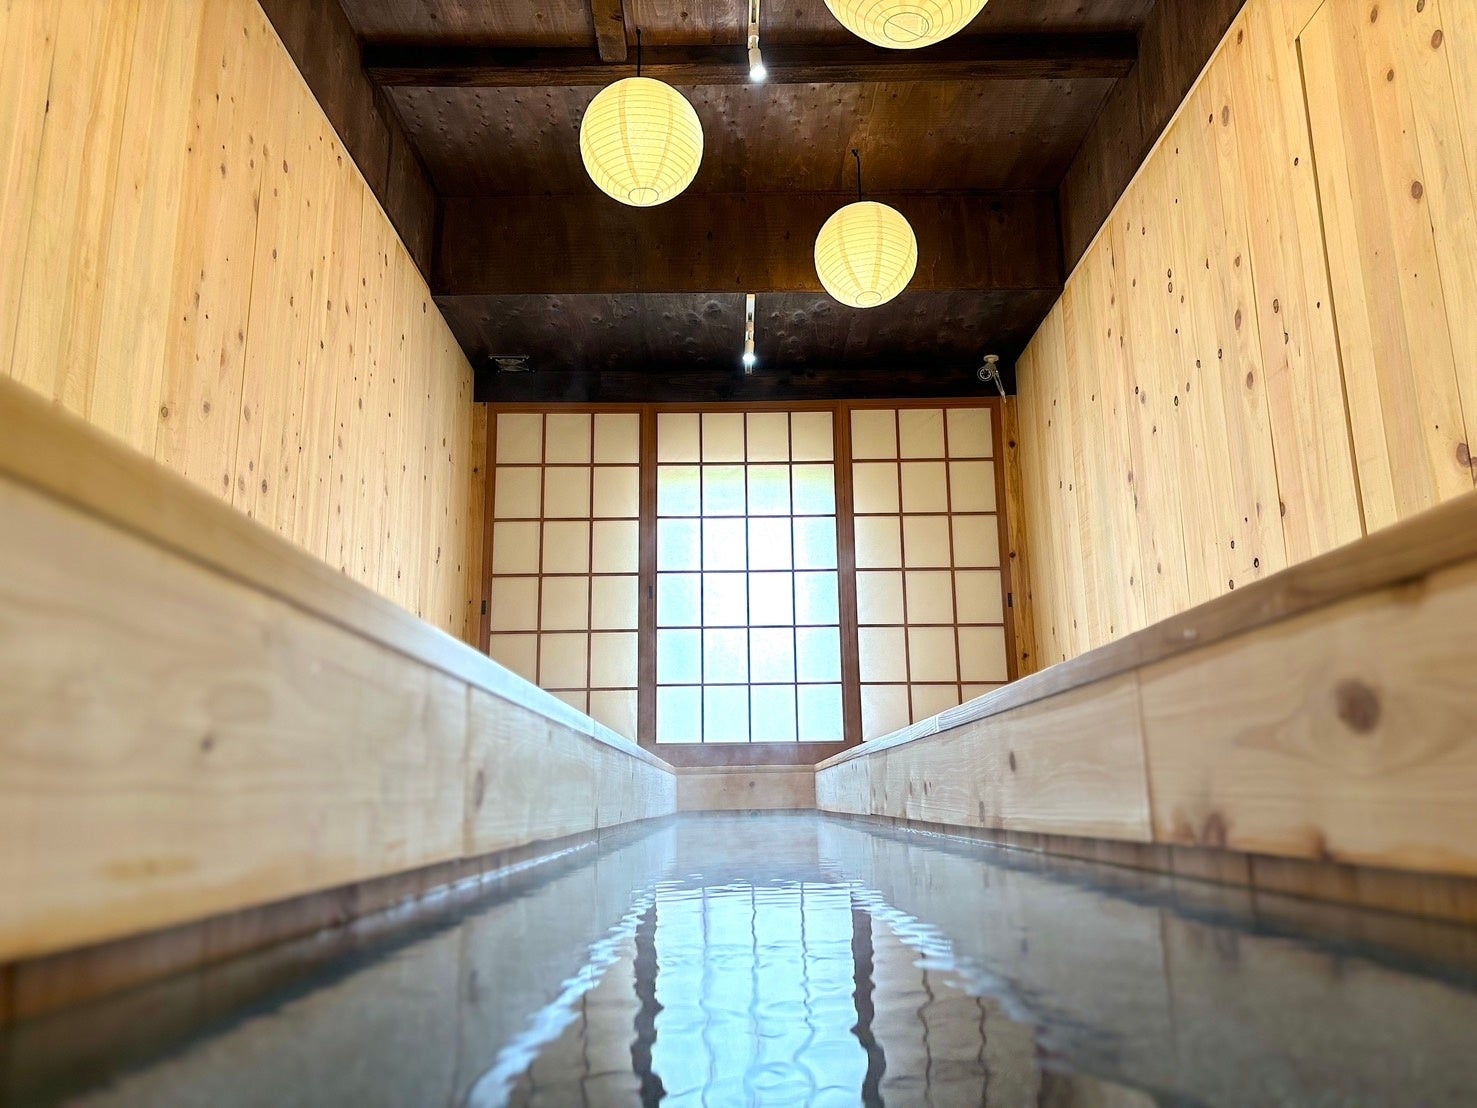 日本初!! 全席に天然温泉足湯が完備の新スポットが誕生!! プレオープン直後から連日インバウンド観光客に大好評